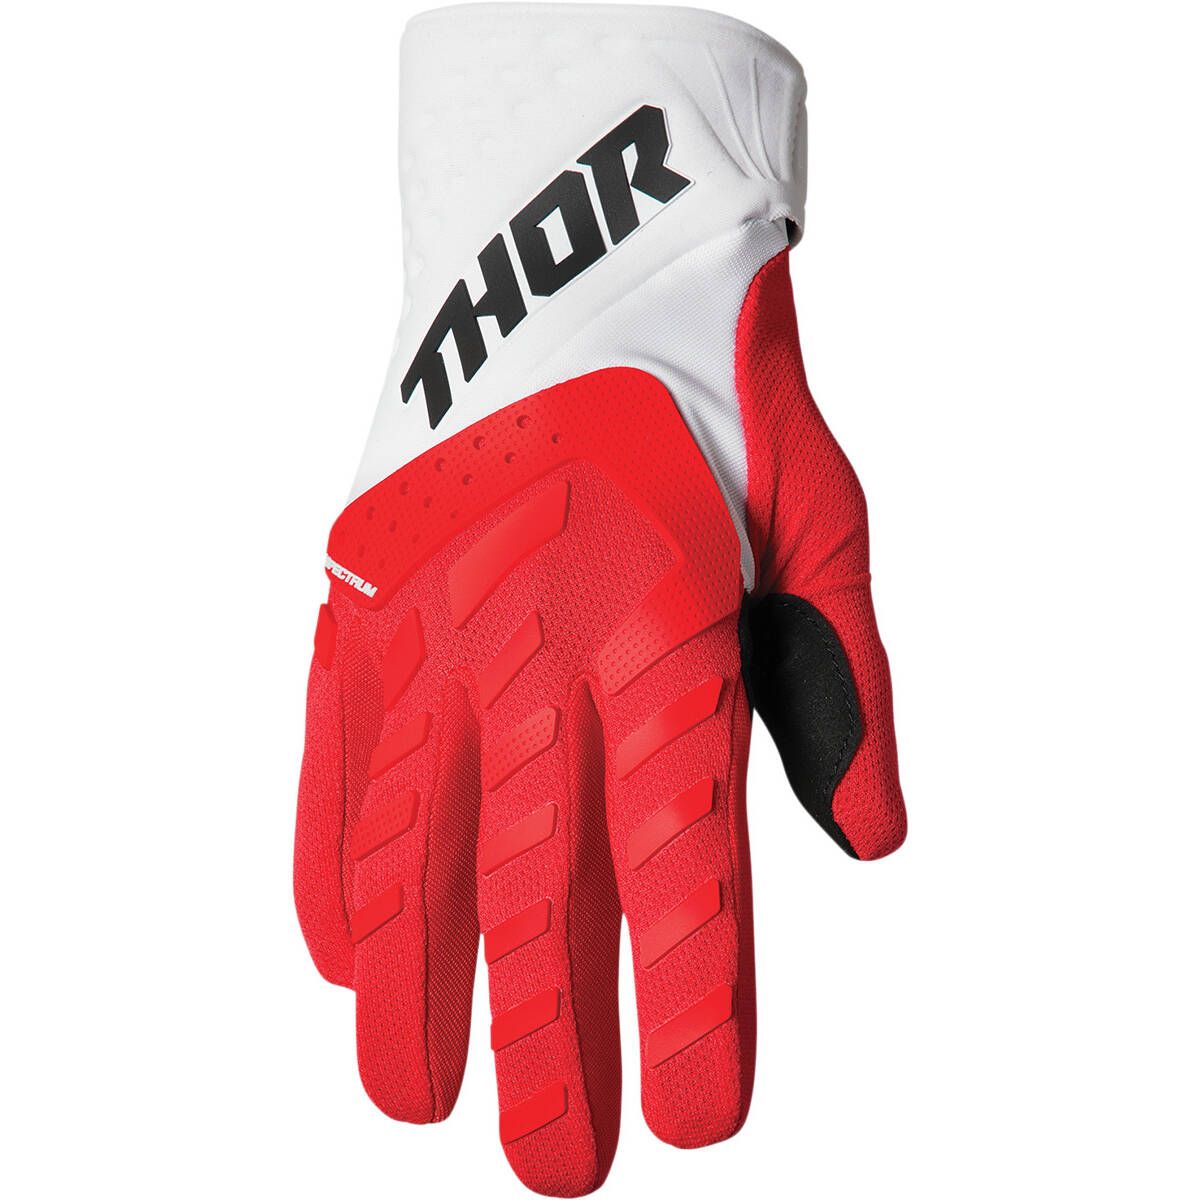 Thor Spectrum MX Gloves - Red/White